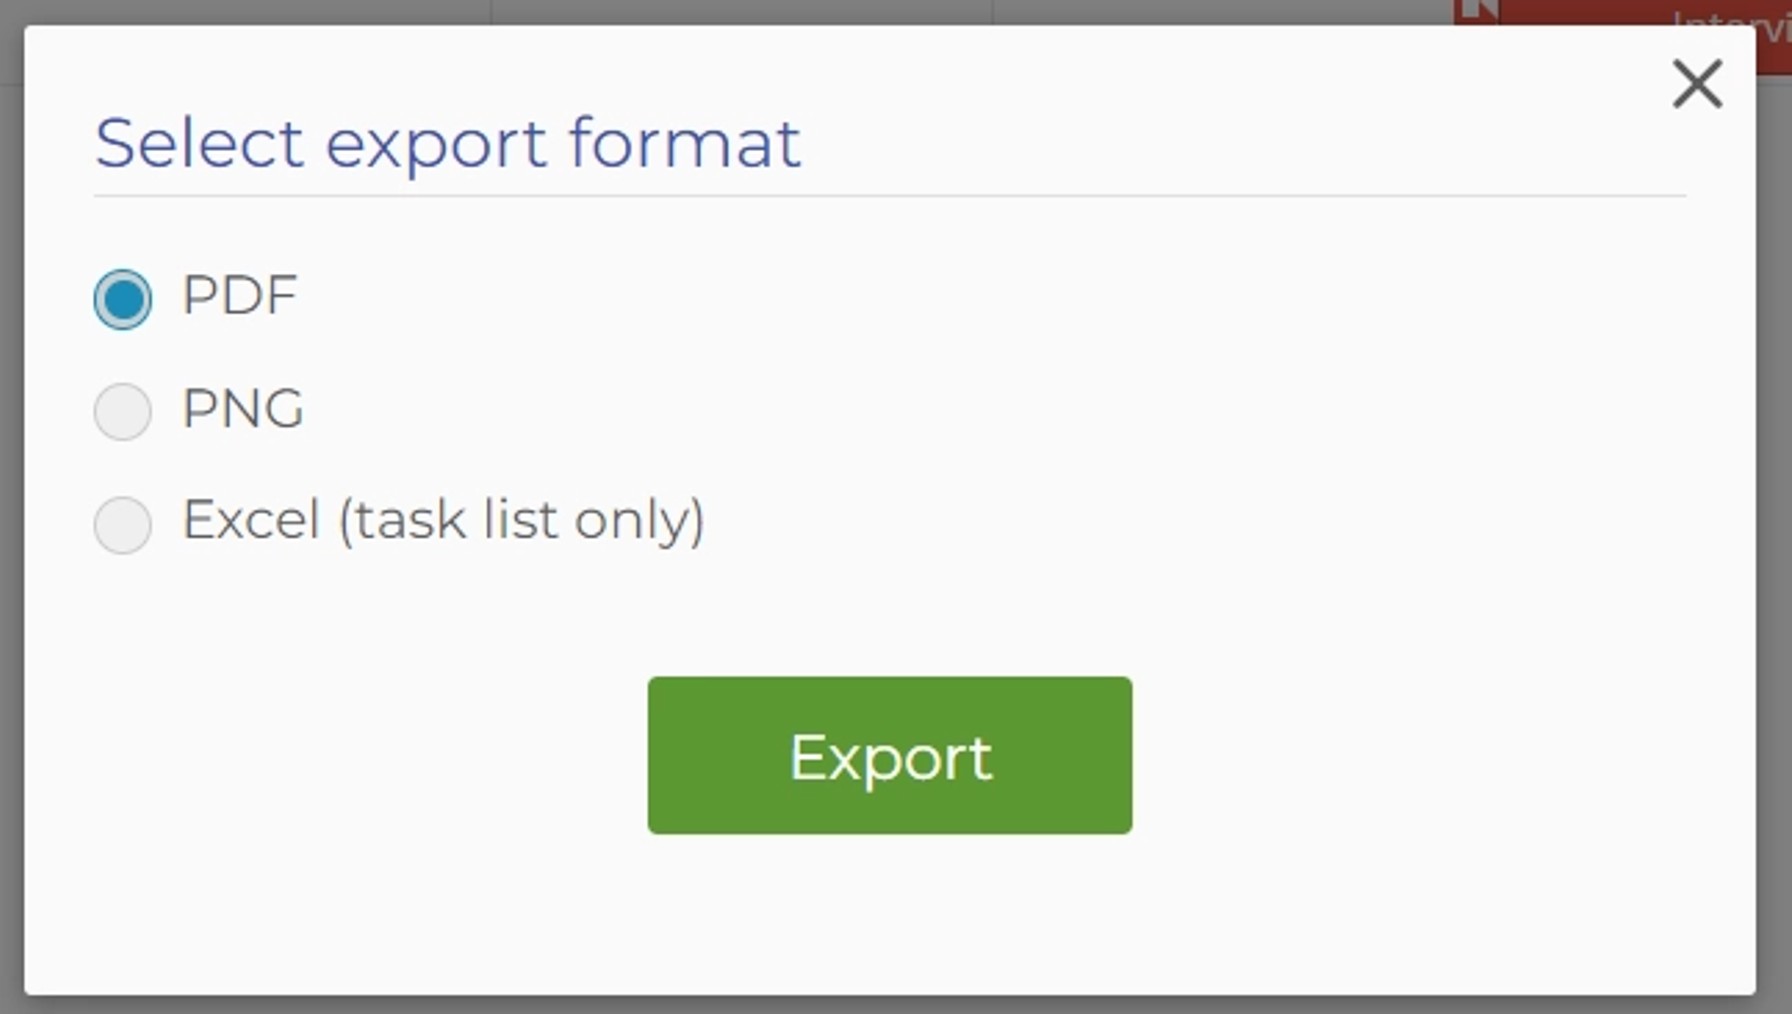 "Choose export format" pop-up menu.